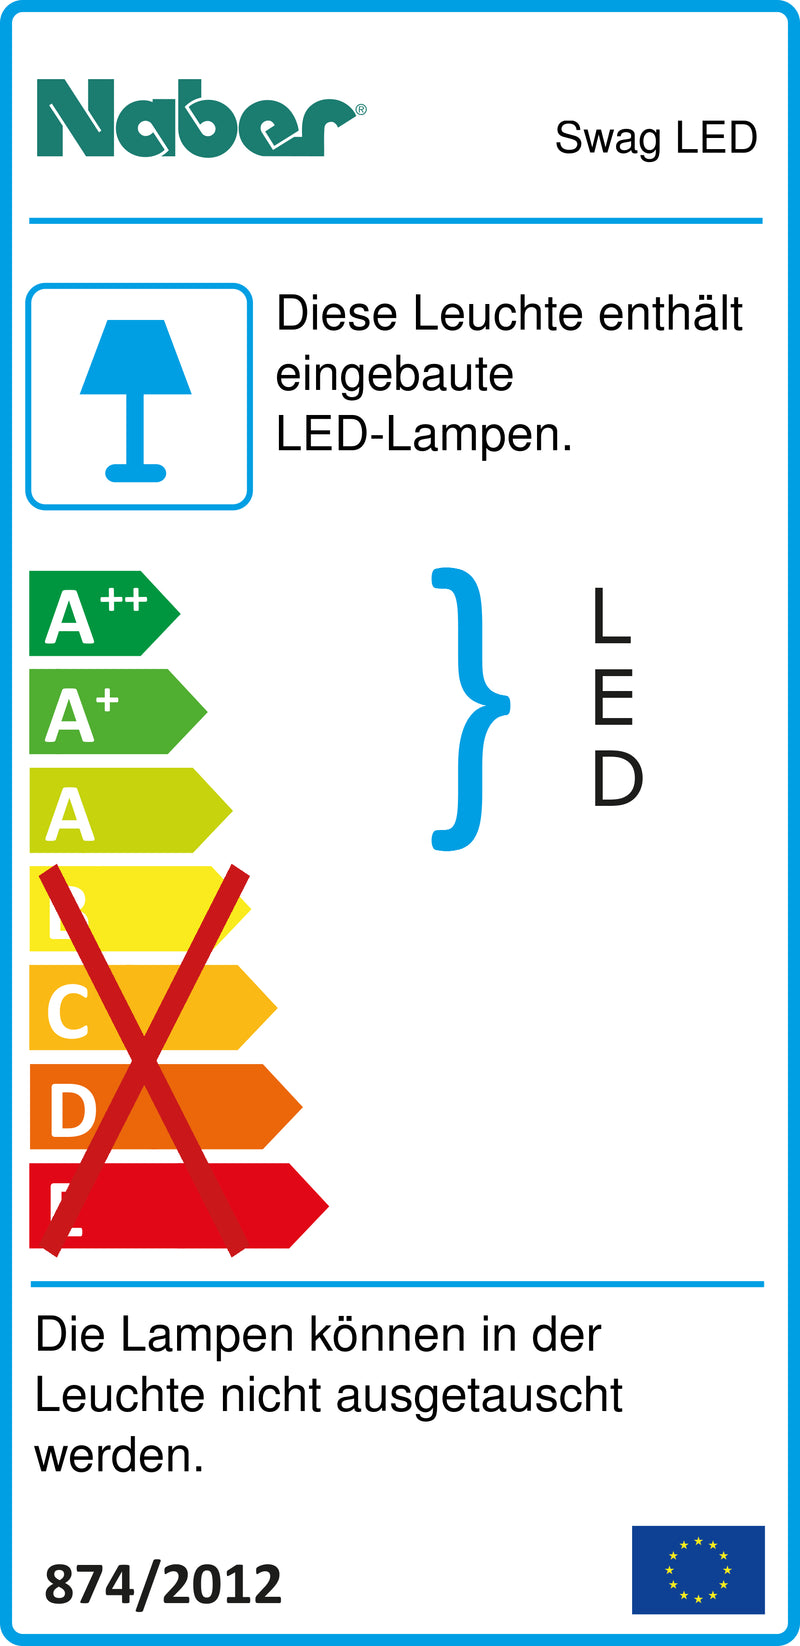 E-Label zu Zeichnung zu Swag LED als Variante Set-3, 3000 K warmweiß von Naber GmbH in der Kategorie Lichttechnik in Österreich auf conceptshop.at